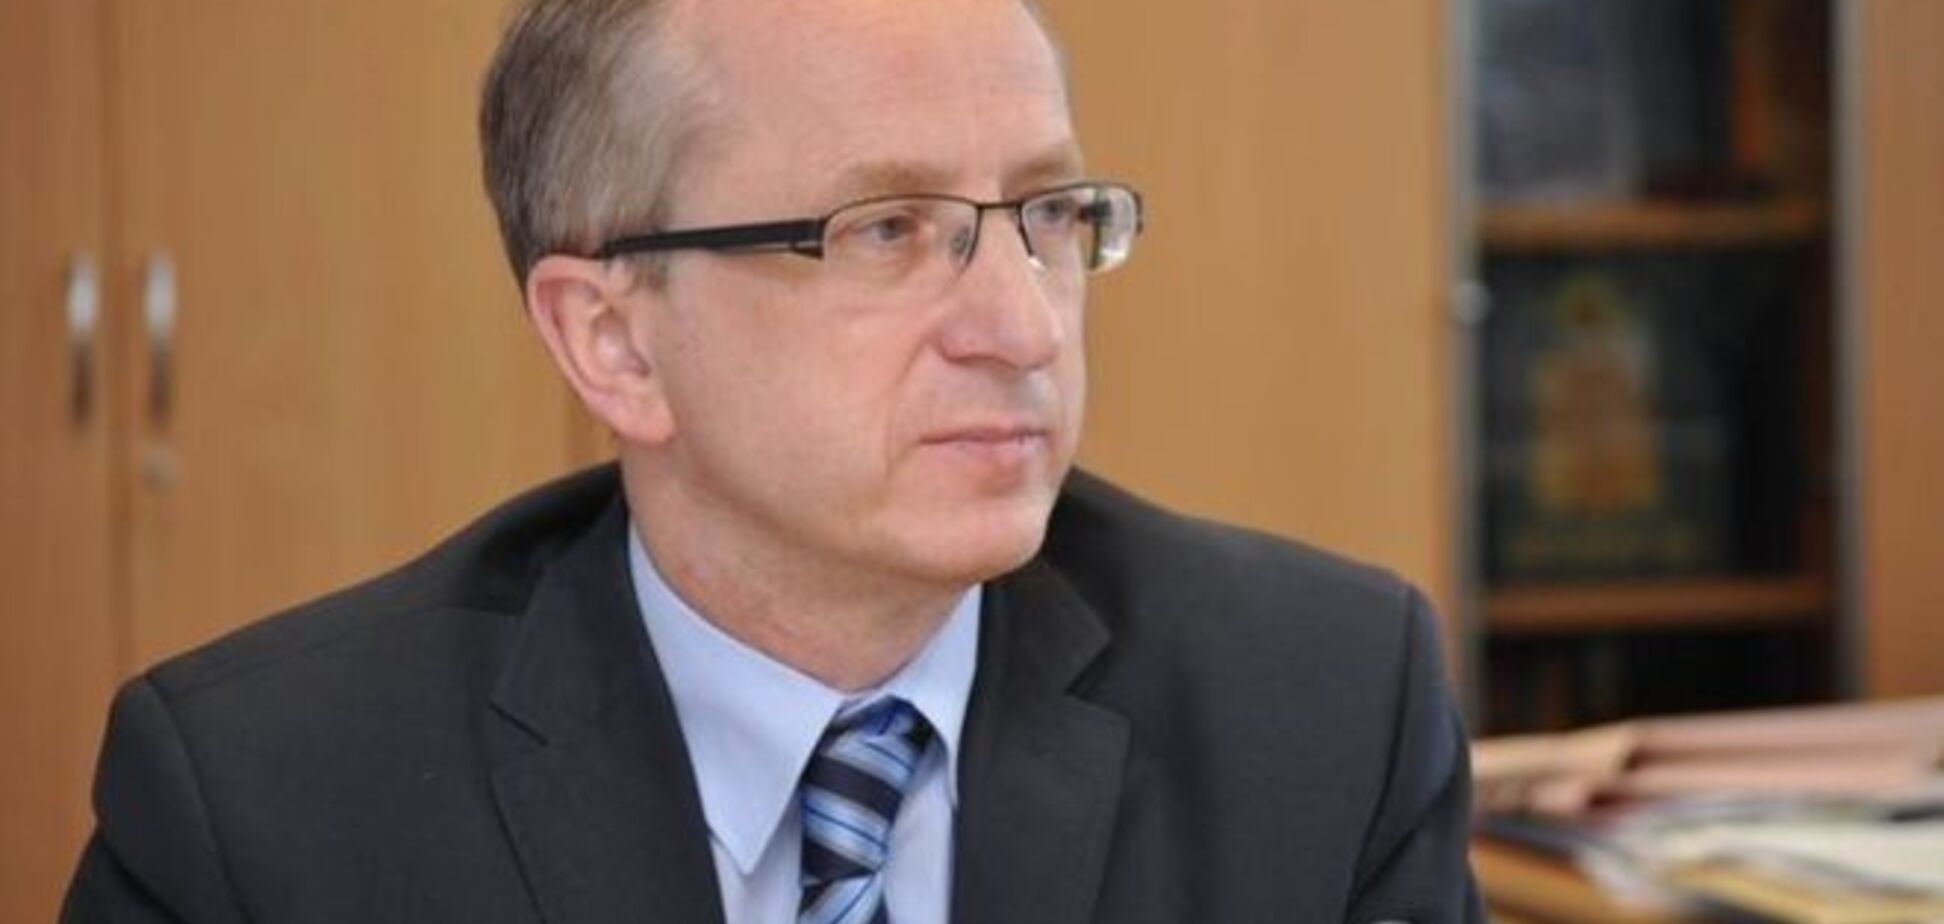 Посол ЕС: Украине стоит демонстрировать больше приверженности реформам